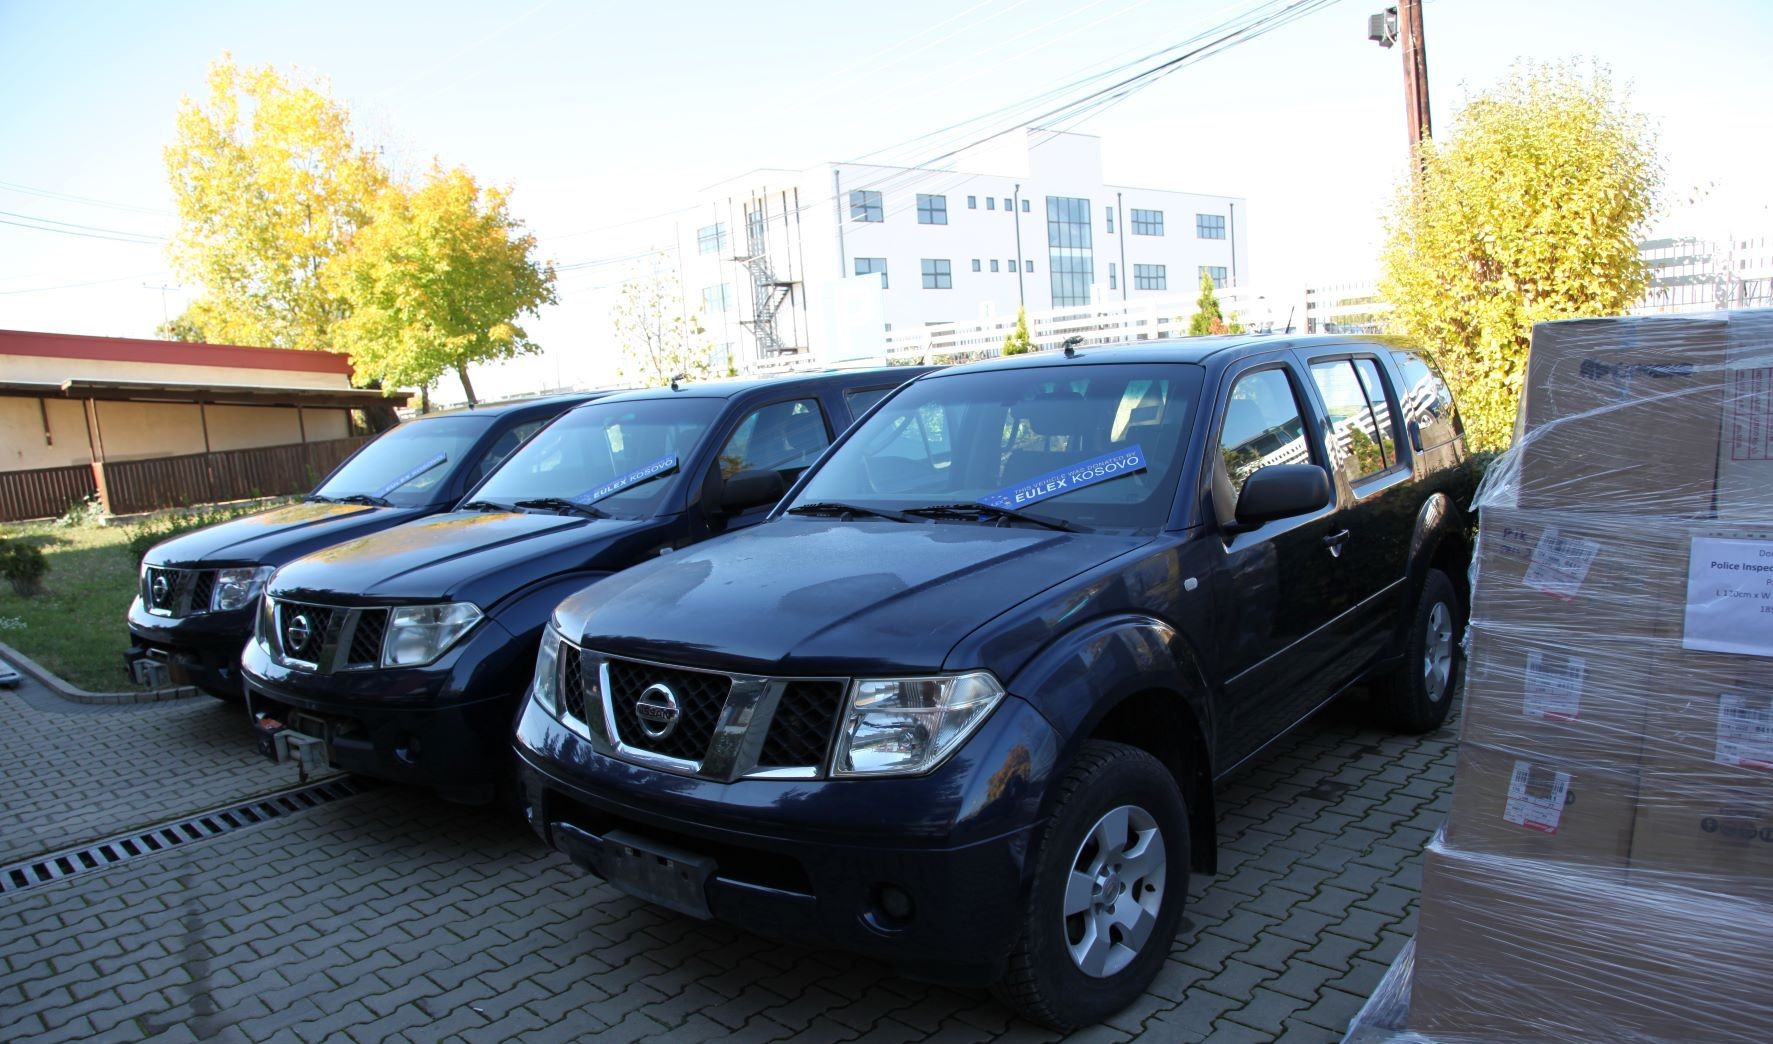 IPK pranoi donacion vetura dhe pajisje të ndryshme nga misioni i EULEX-it